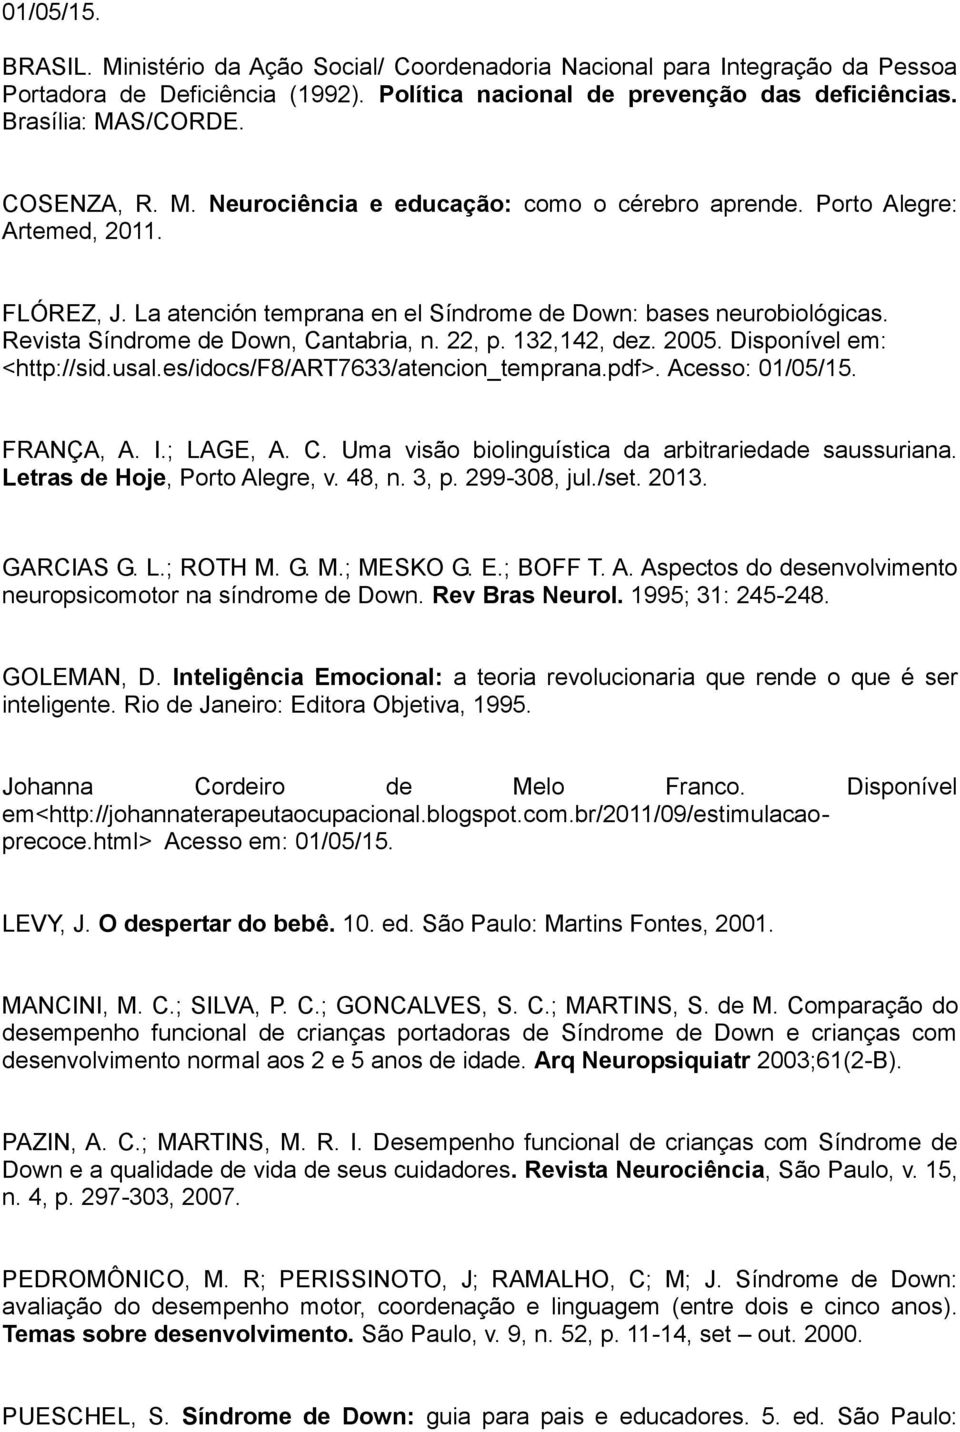 Revista Síndrome de Down, Cantabria, n. 22, p. 132,142, dez. 2005. Disponível em: <http://sid.usal.es/idocs/f8/art7633/atencion_temprana.pdf>. Acesso: 01/05/15. FRANÇA, A. I.; LAGE, A. C. Uma visão biolinguística da arbitrariedade saussuriana.